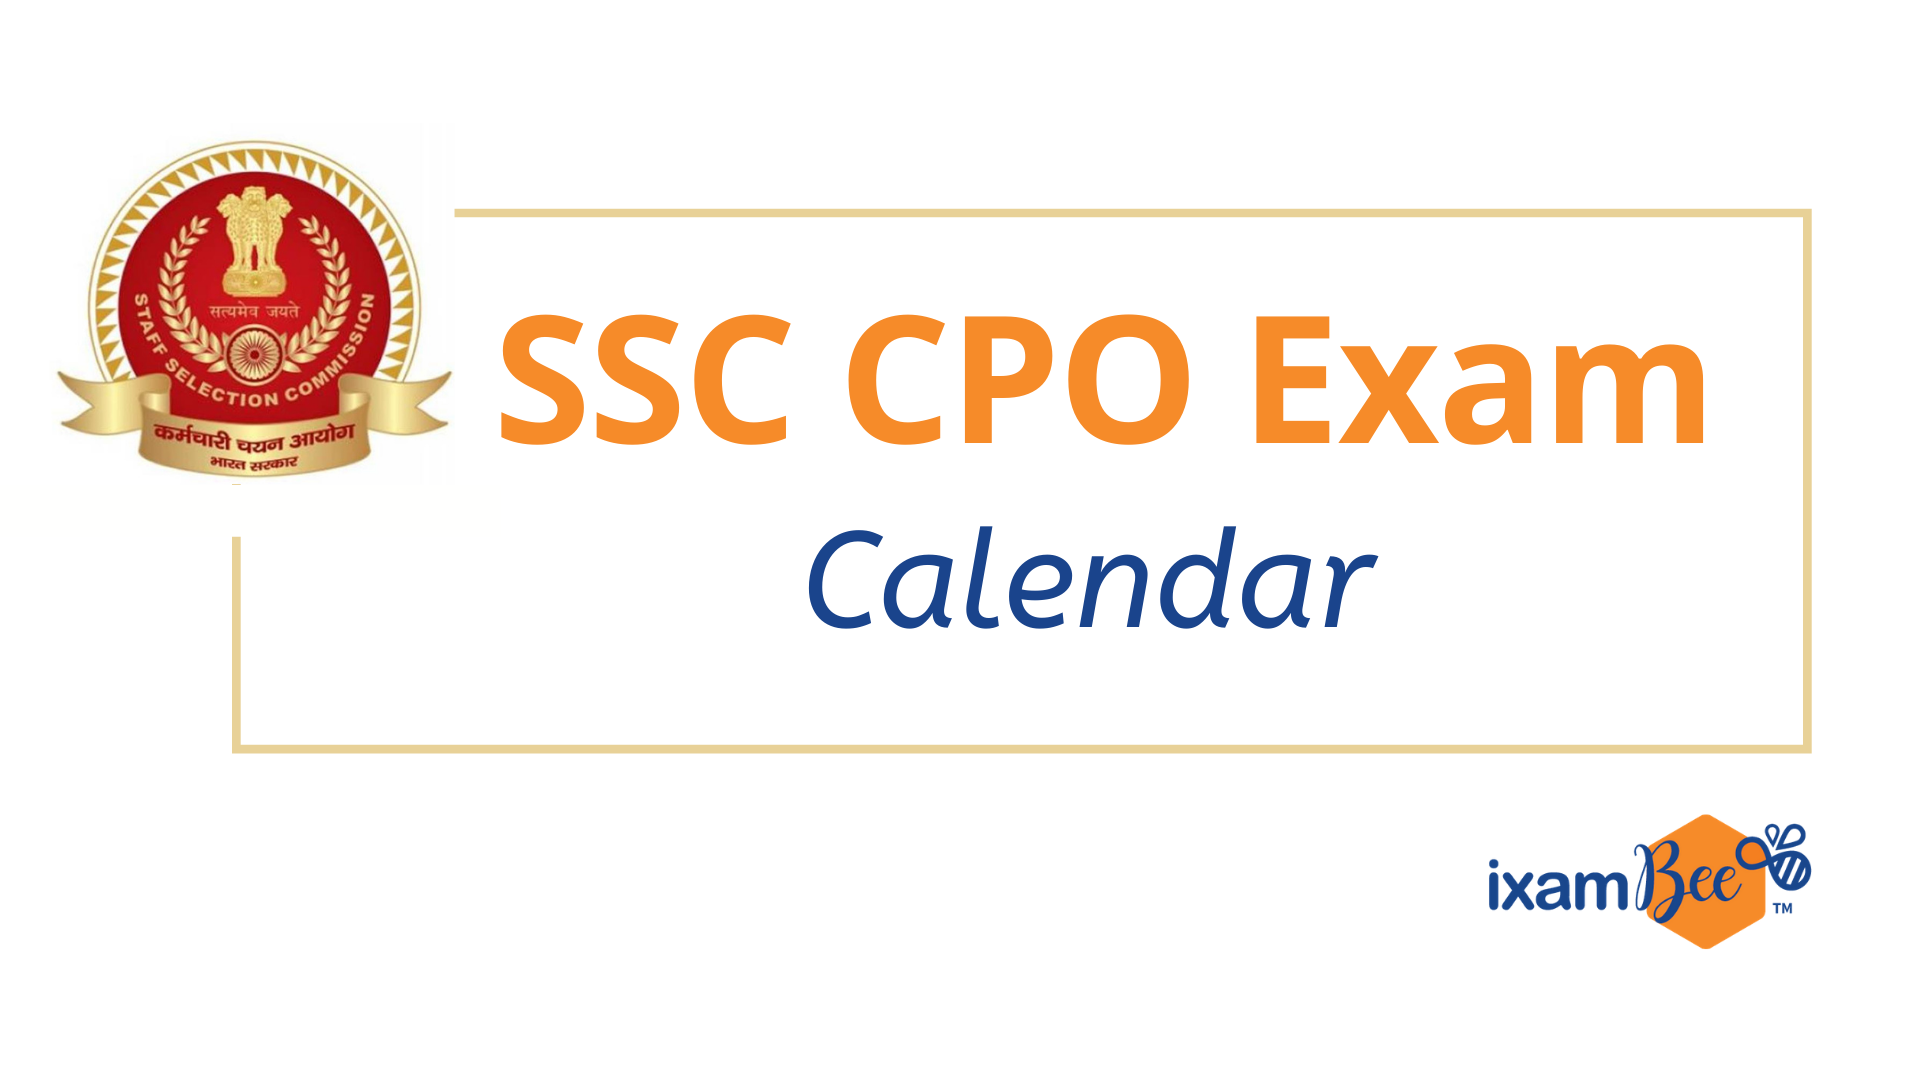 SSC CPO Exam Dates